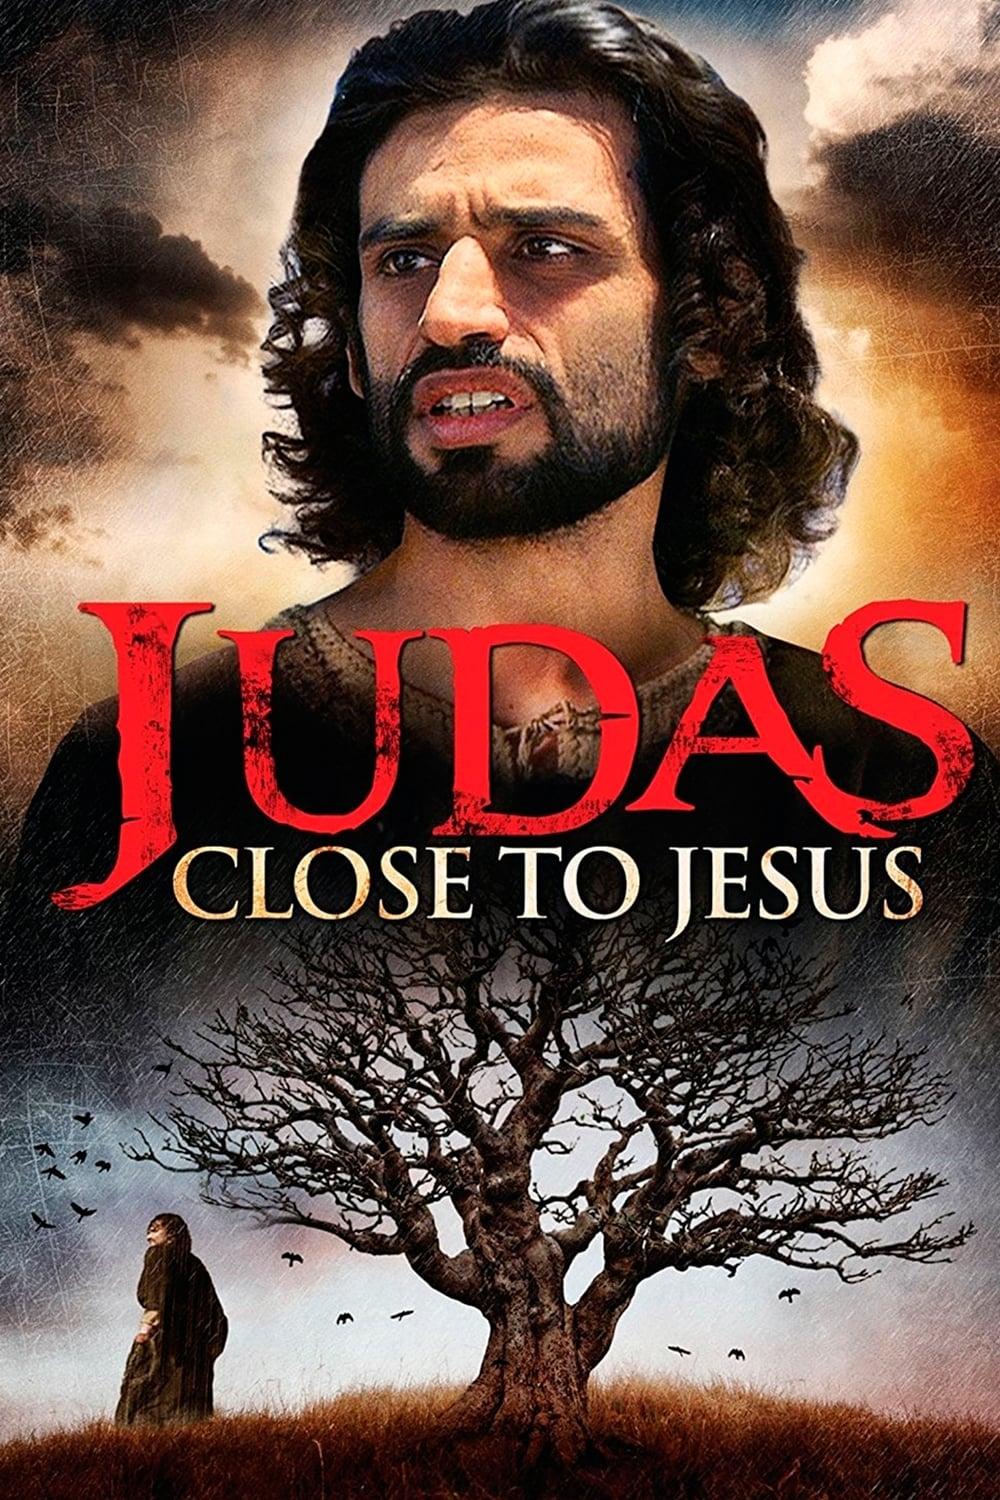 Judas: Close to Jesus poster